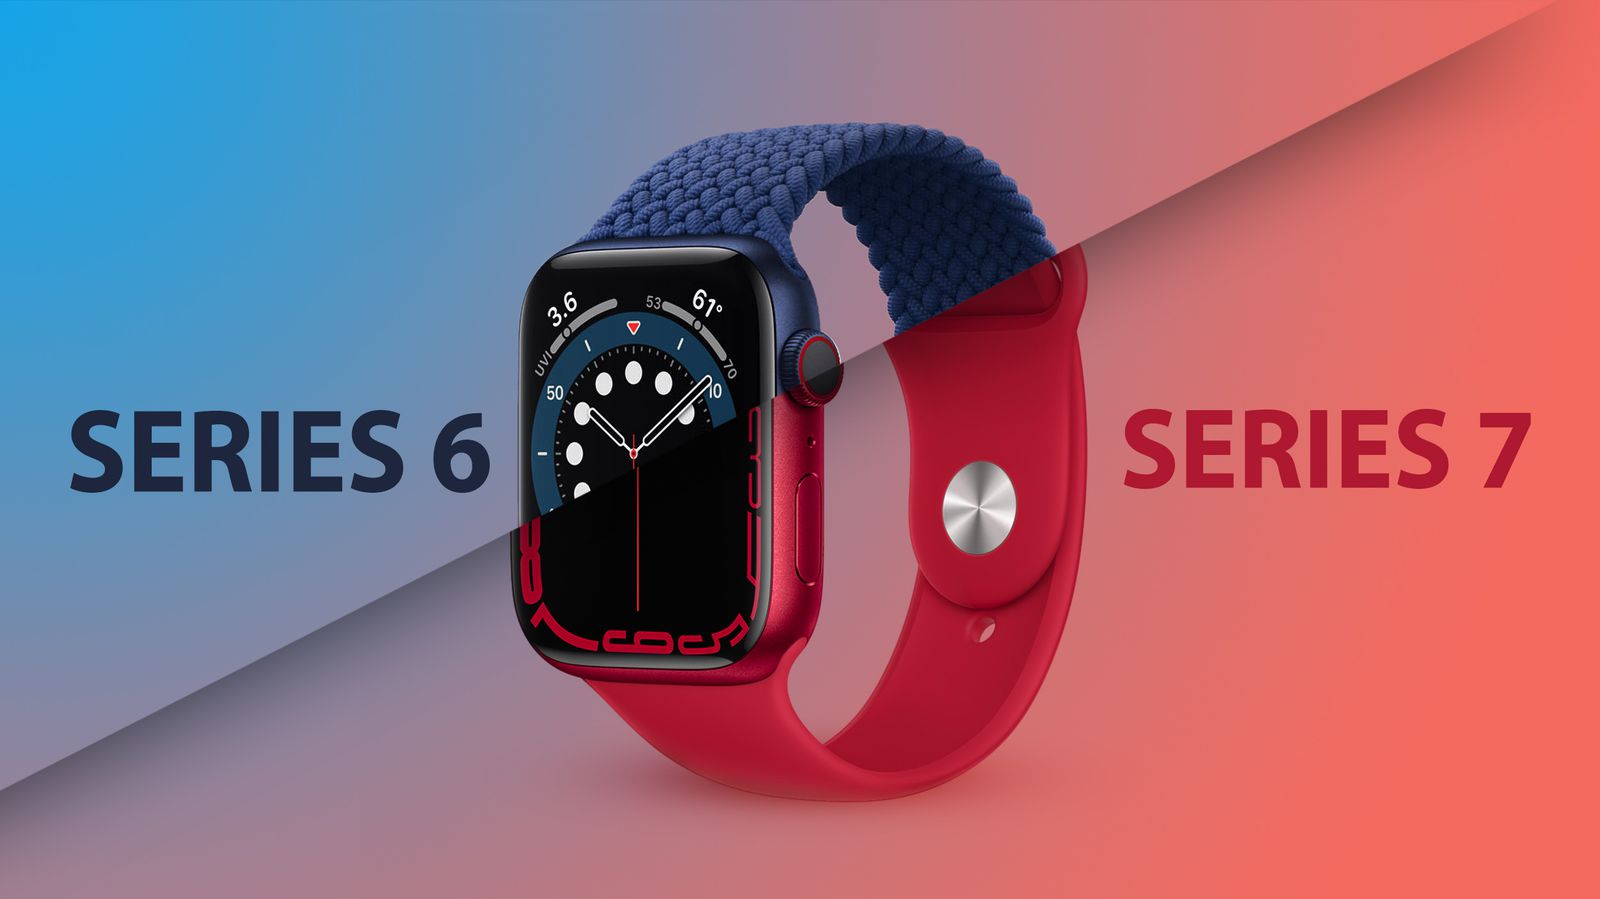 Apple-Watch-Series-6-vs-7.jpg